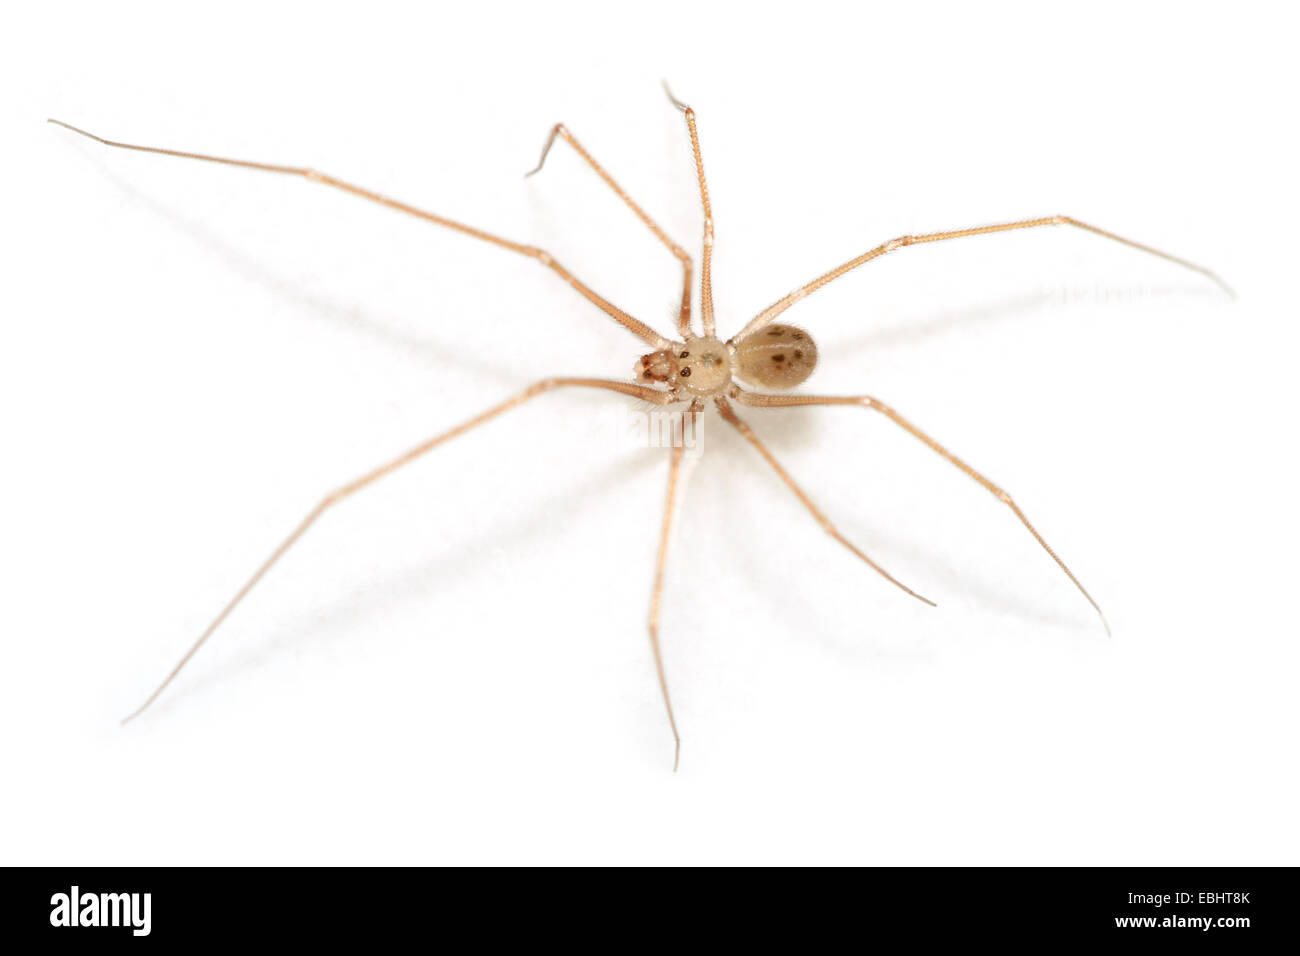 Voce maschile Spermophora senoculata spider su sfondo bianco. Famiglia Pholcidae, cantina o tremore ragni. Questo ragno ha solo sei occhi, in due gruppi. Foto Stock